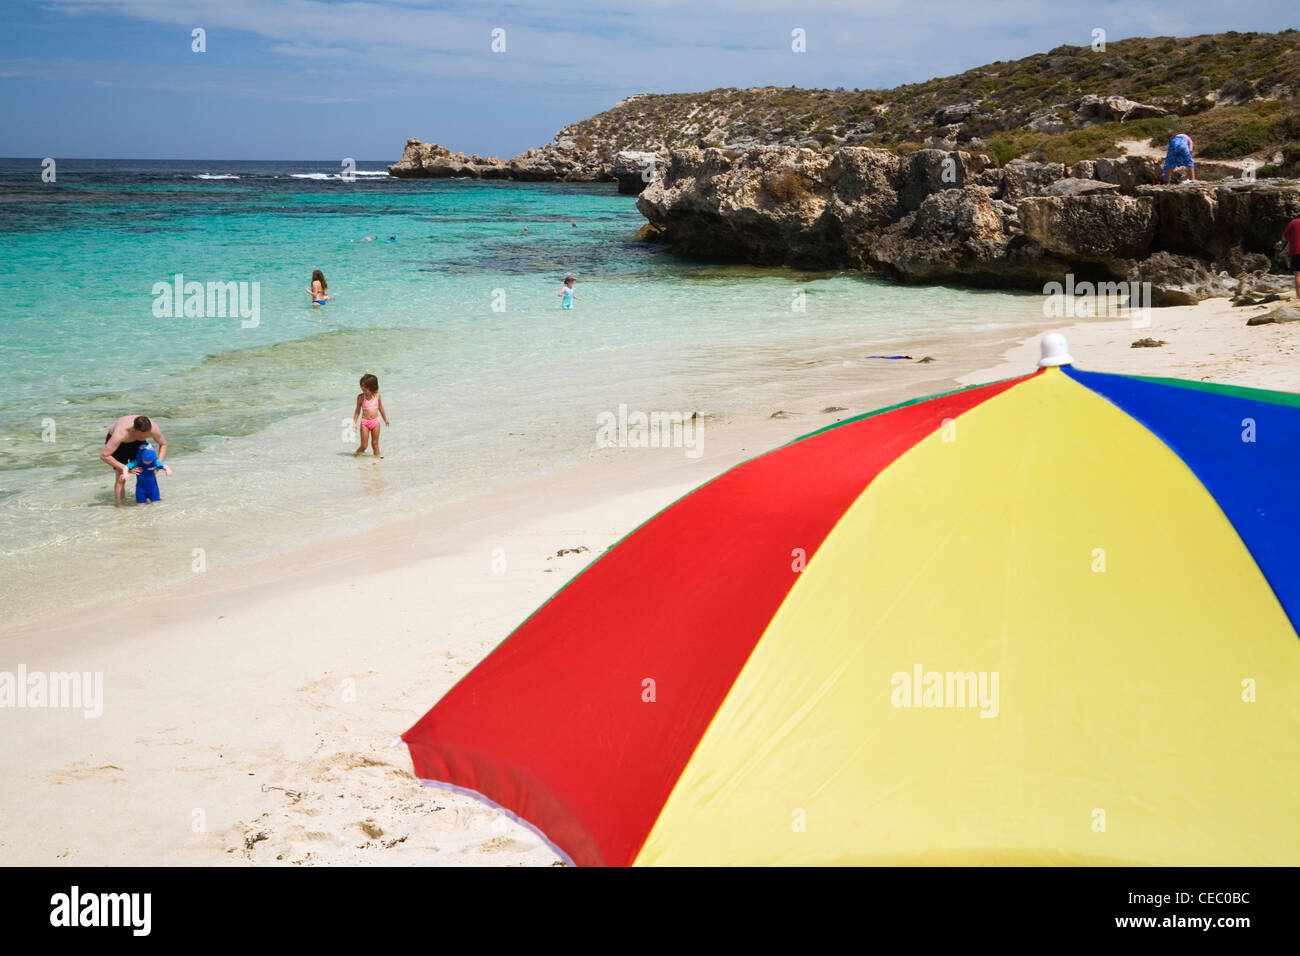 Beach umbrella at Little Salmon Bay on Rottnest Island, Western Australia, AUSTRALIA Stock Photo